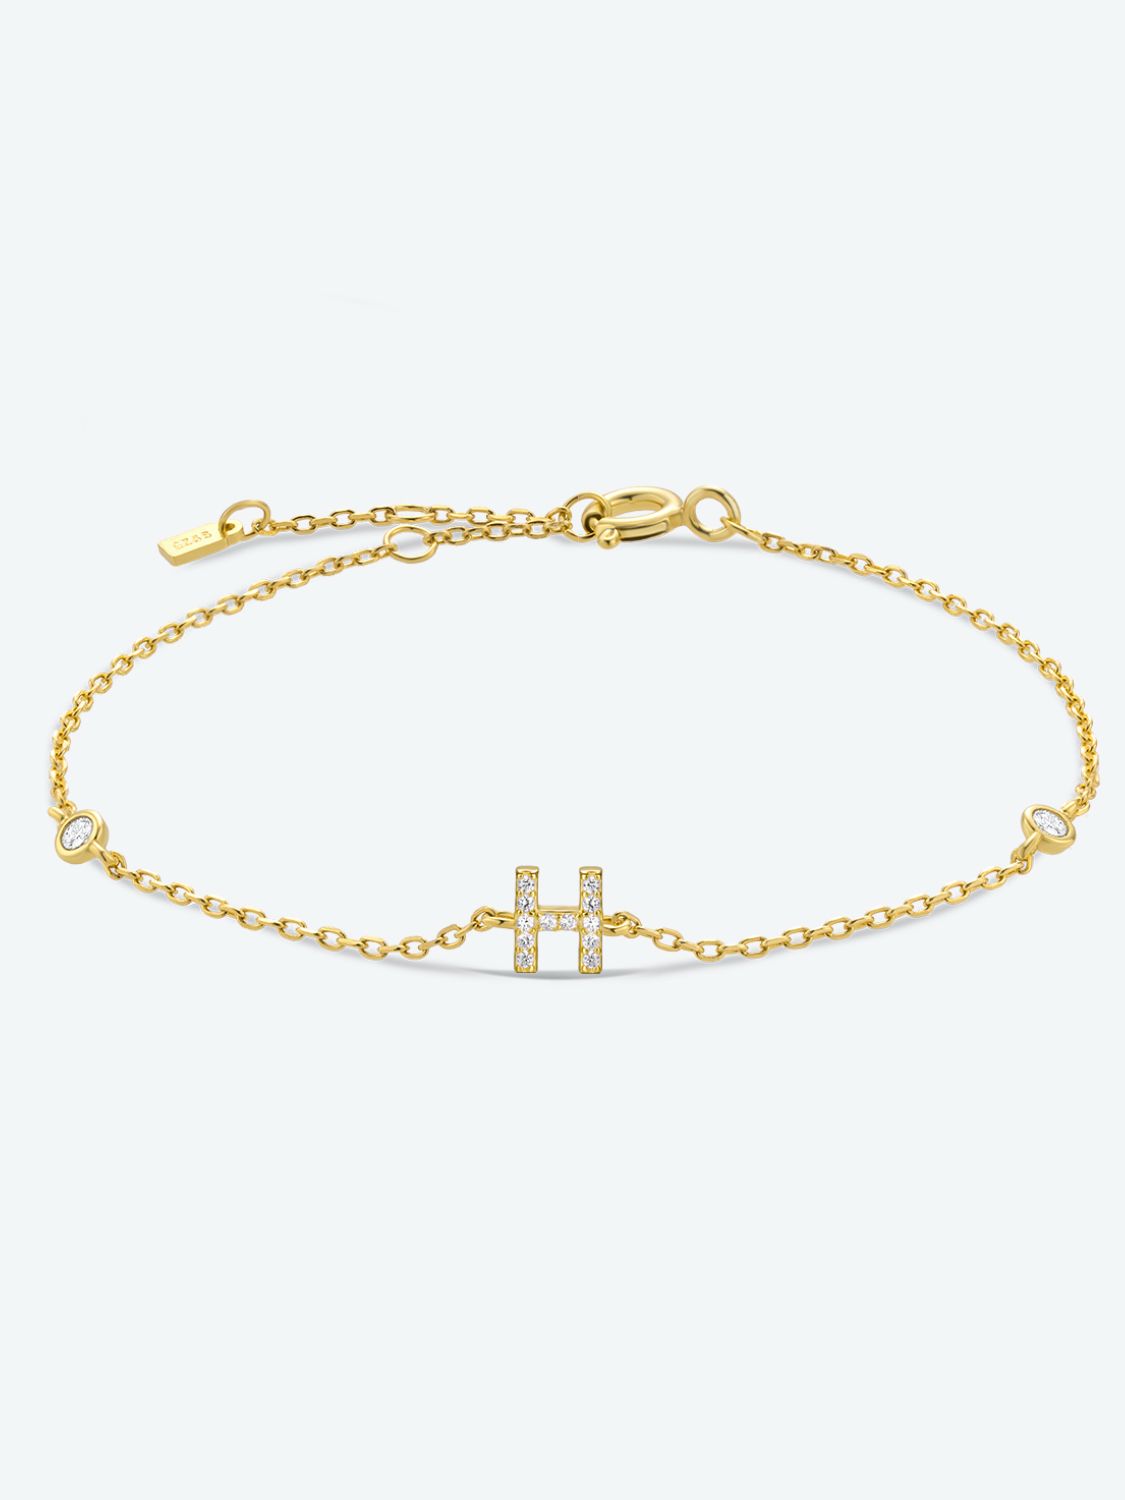 Zircon 925 Sterling Silver Bracelet - H-Gold / One Size - Women’s Jewelry - Bracelets - 7 - 2024